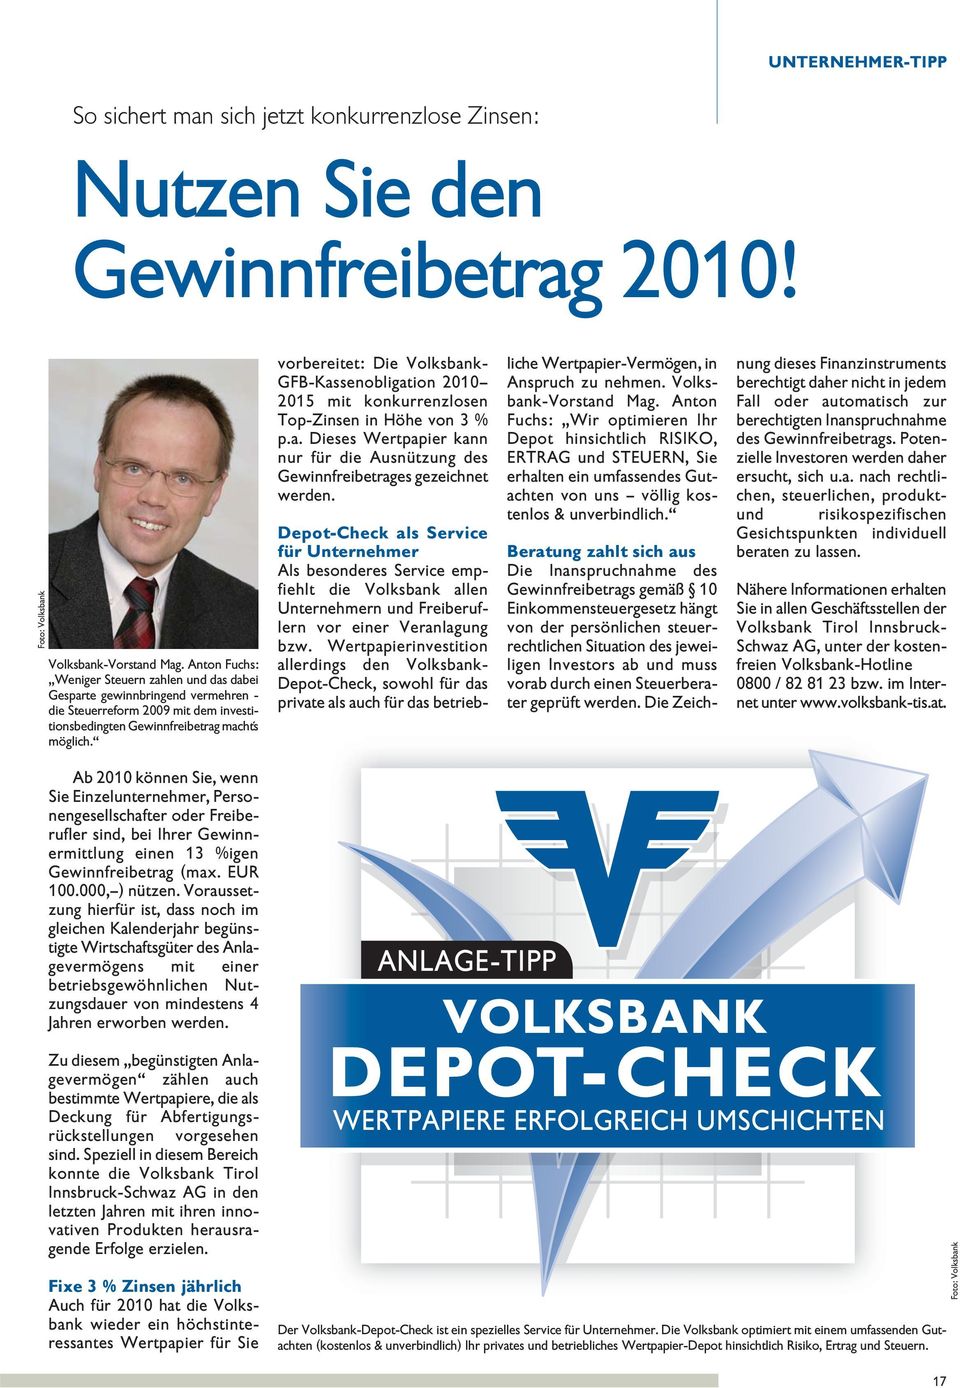 vorbereitet: Die Voksbank- GFB-Kassenobigation 2010 2015 mit konkurrenzosen Top-Zinsen in Höhe von 3 % p.a. Dieses Wertpapier kann nur für die Ausnützung des Gewinnfreibetrages gezeichnet werden.